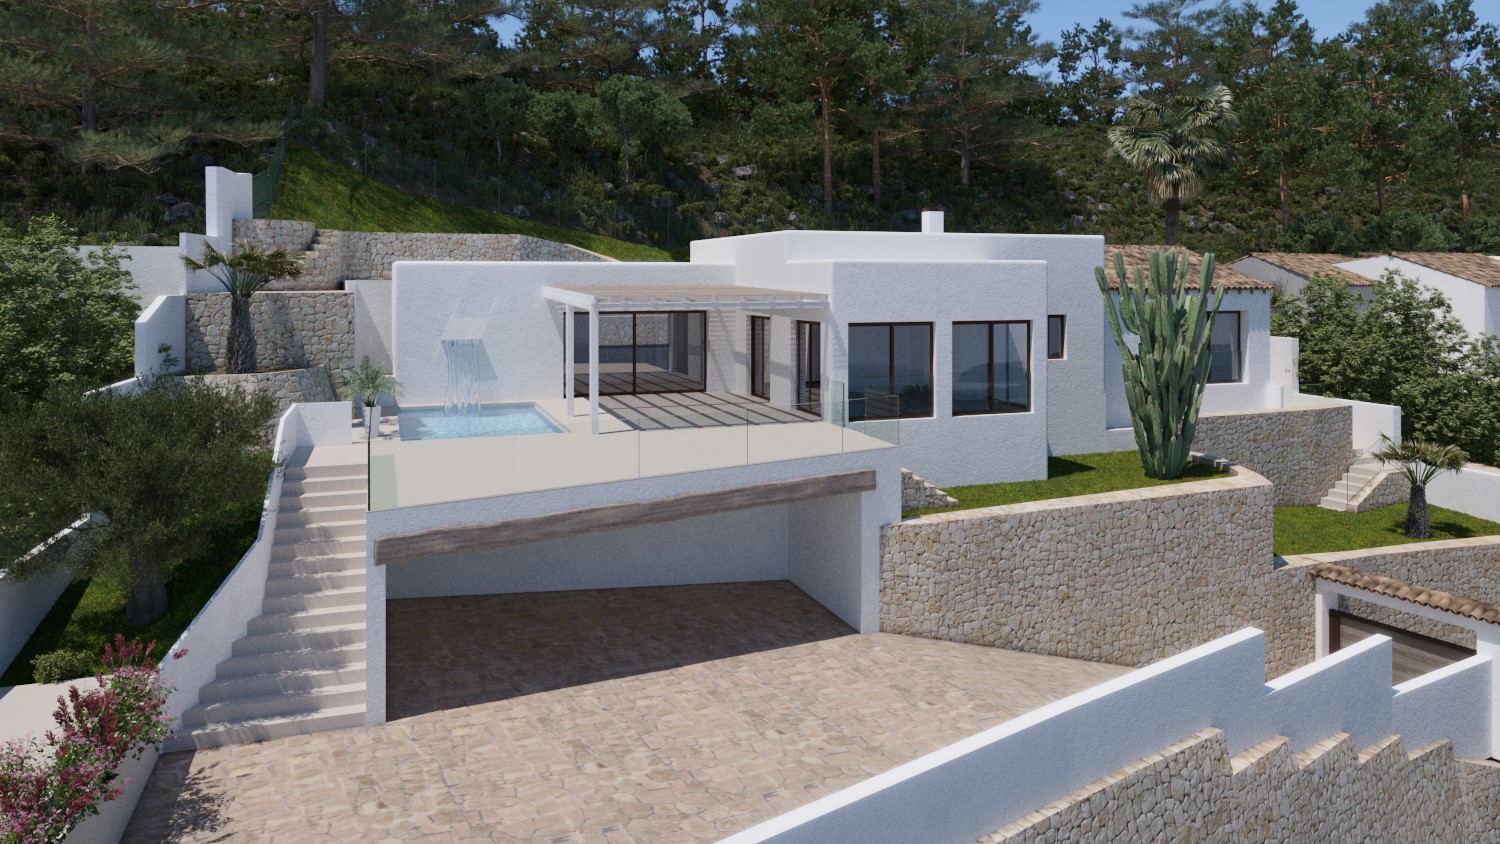 Sea view villa with renovation permit granted